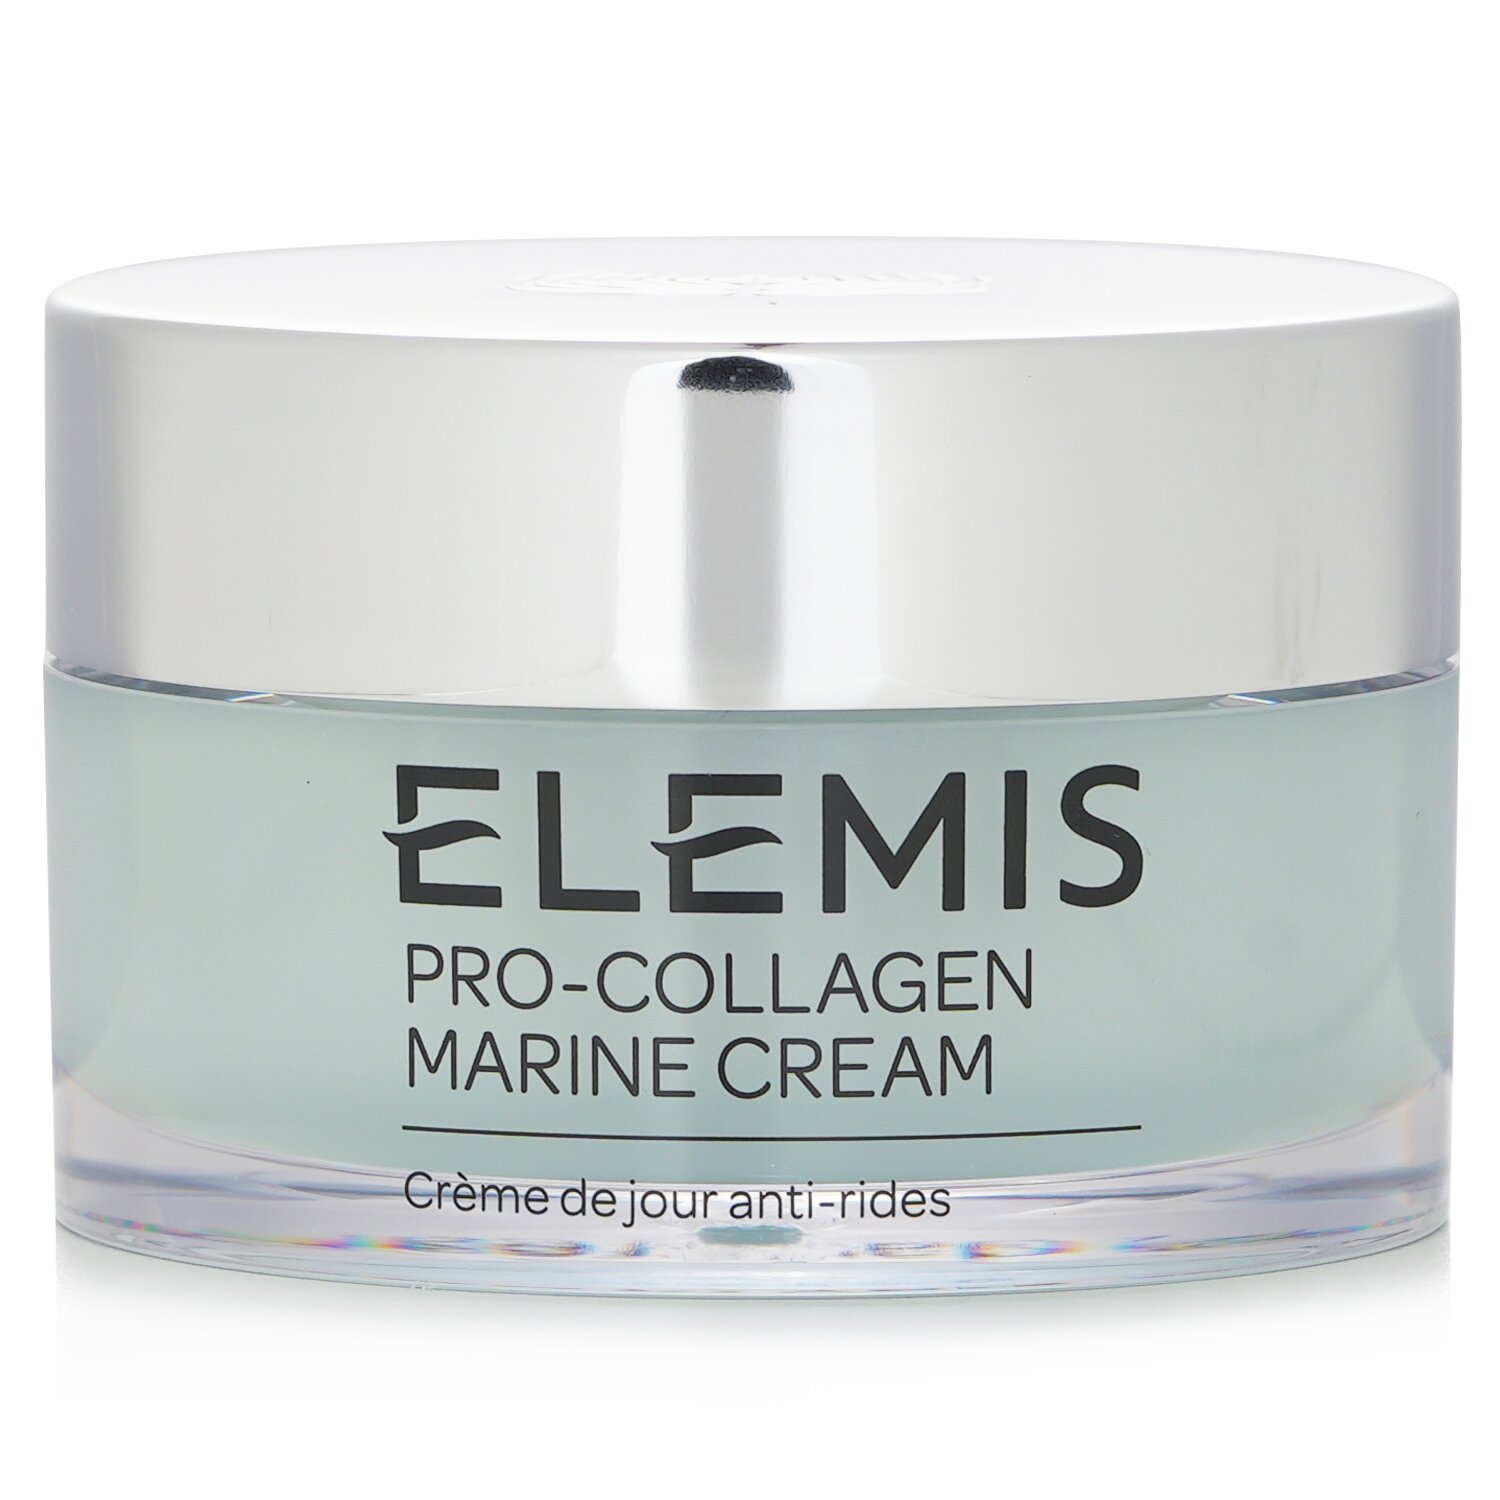 Elemis Pro-Collagen Marine Cream 50ml/1.7oz